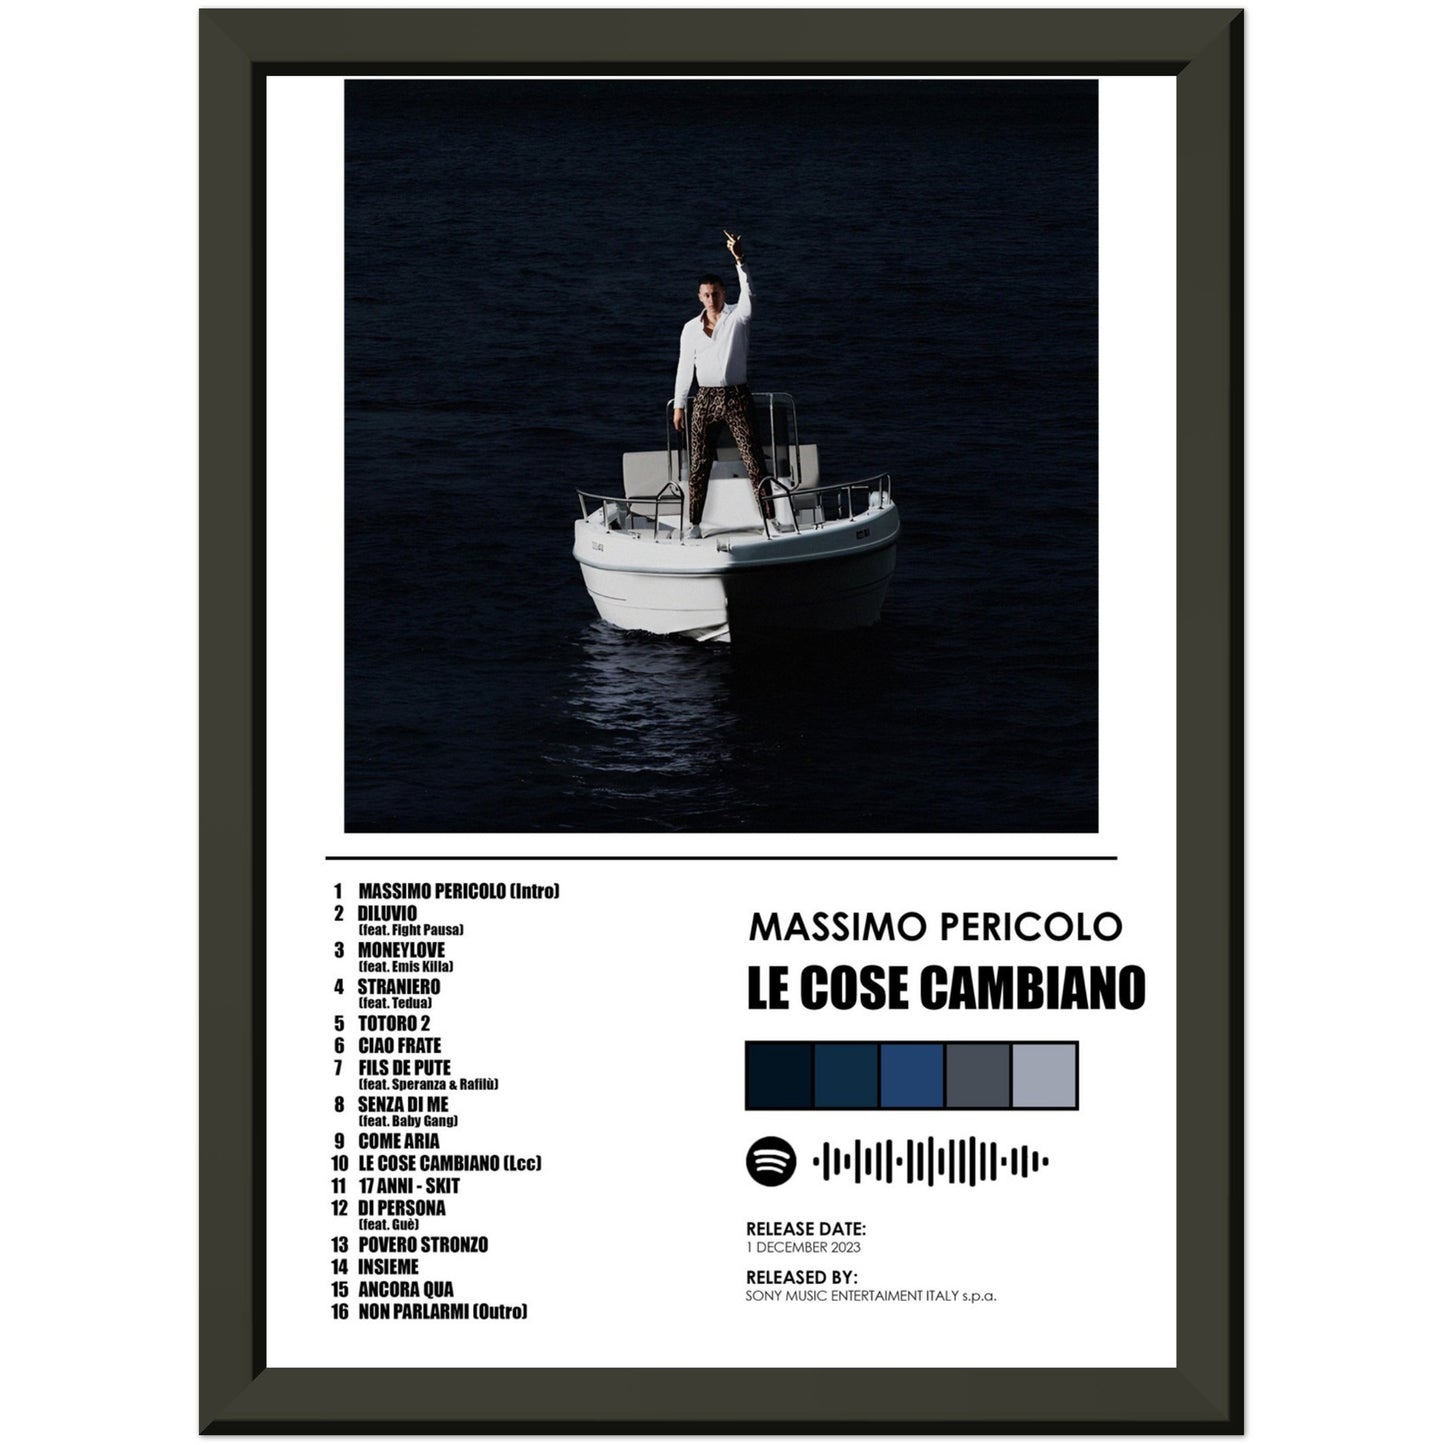 Poster album "Le cose cambiano" (Massimo Pericolo)